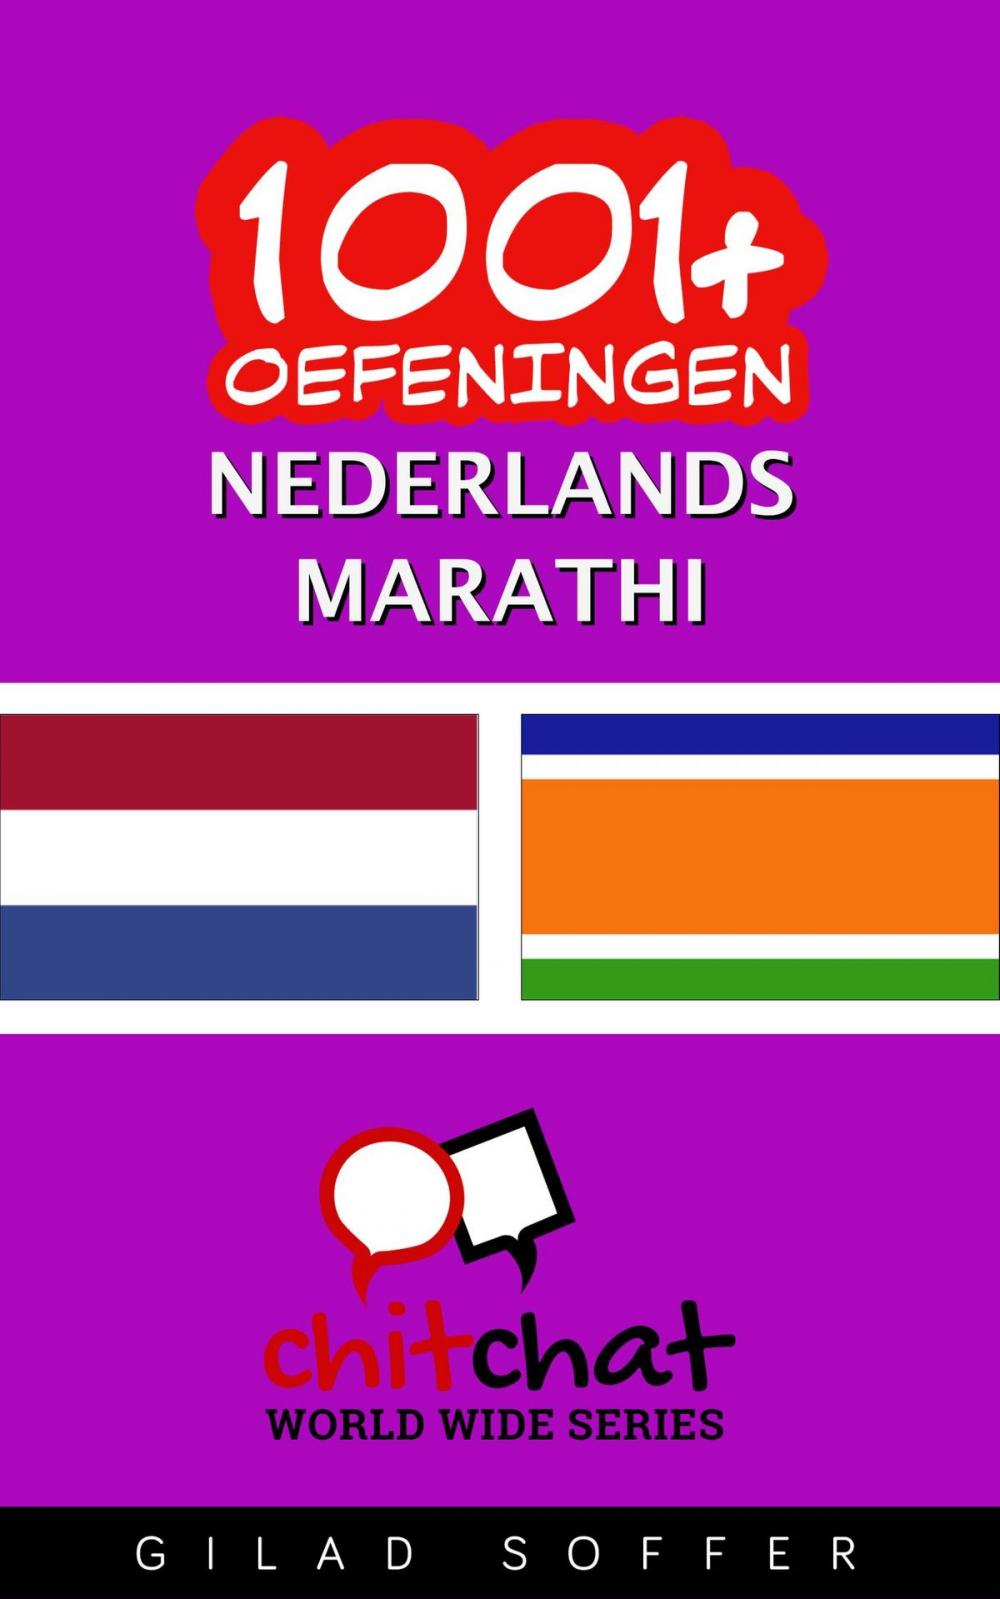 Big bigCover of 1001+ oefeningen nederlands - Marathi